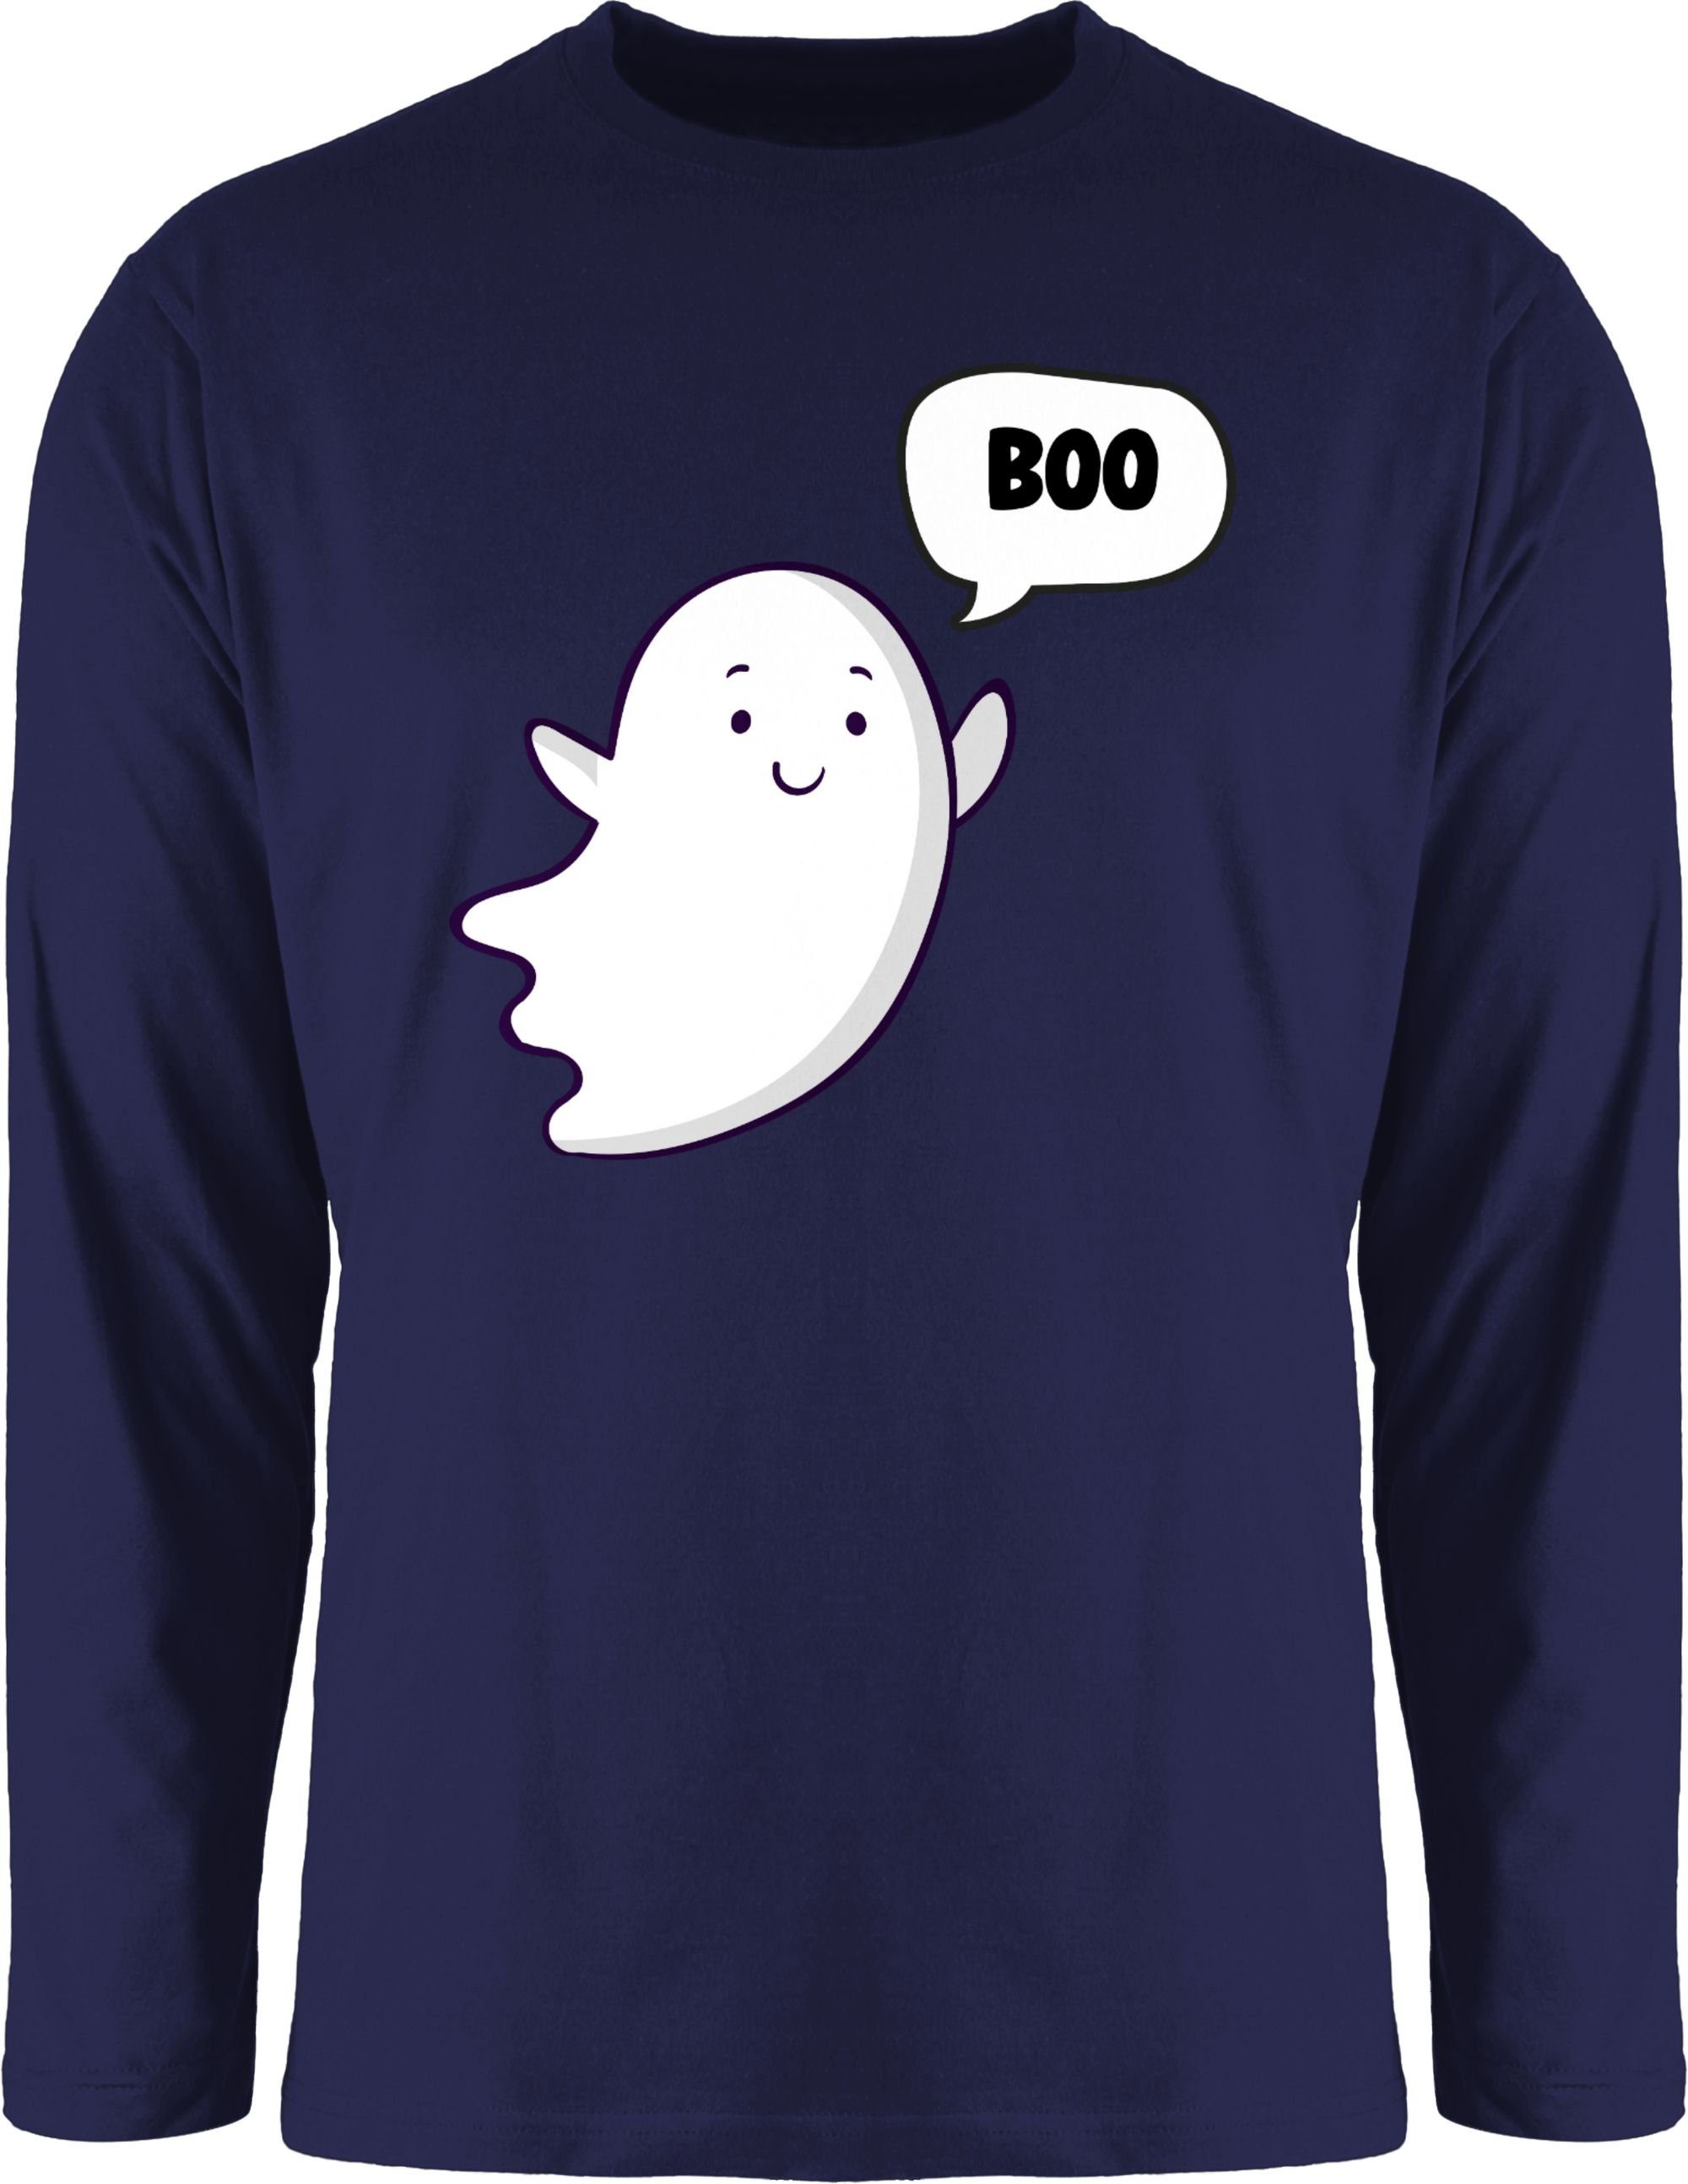 Shirtracer Rundhalsshirt Süßer kleiner Geist Geister Gespenst Ghost Halloween Kostüme Herren 2 Navy Blau